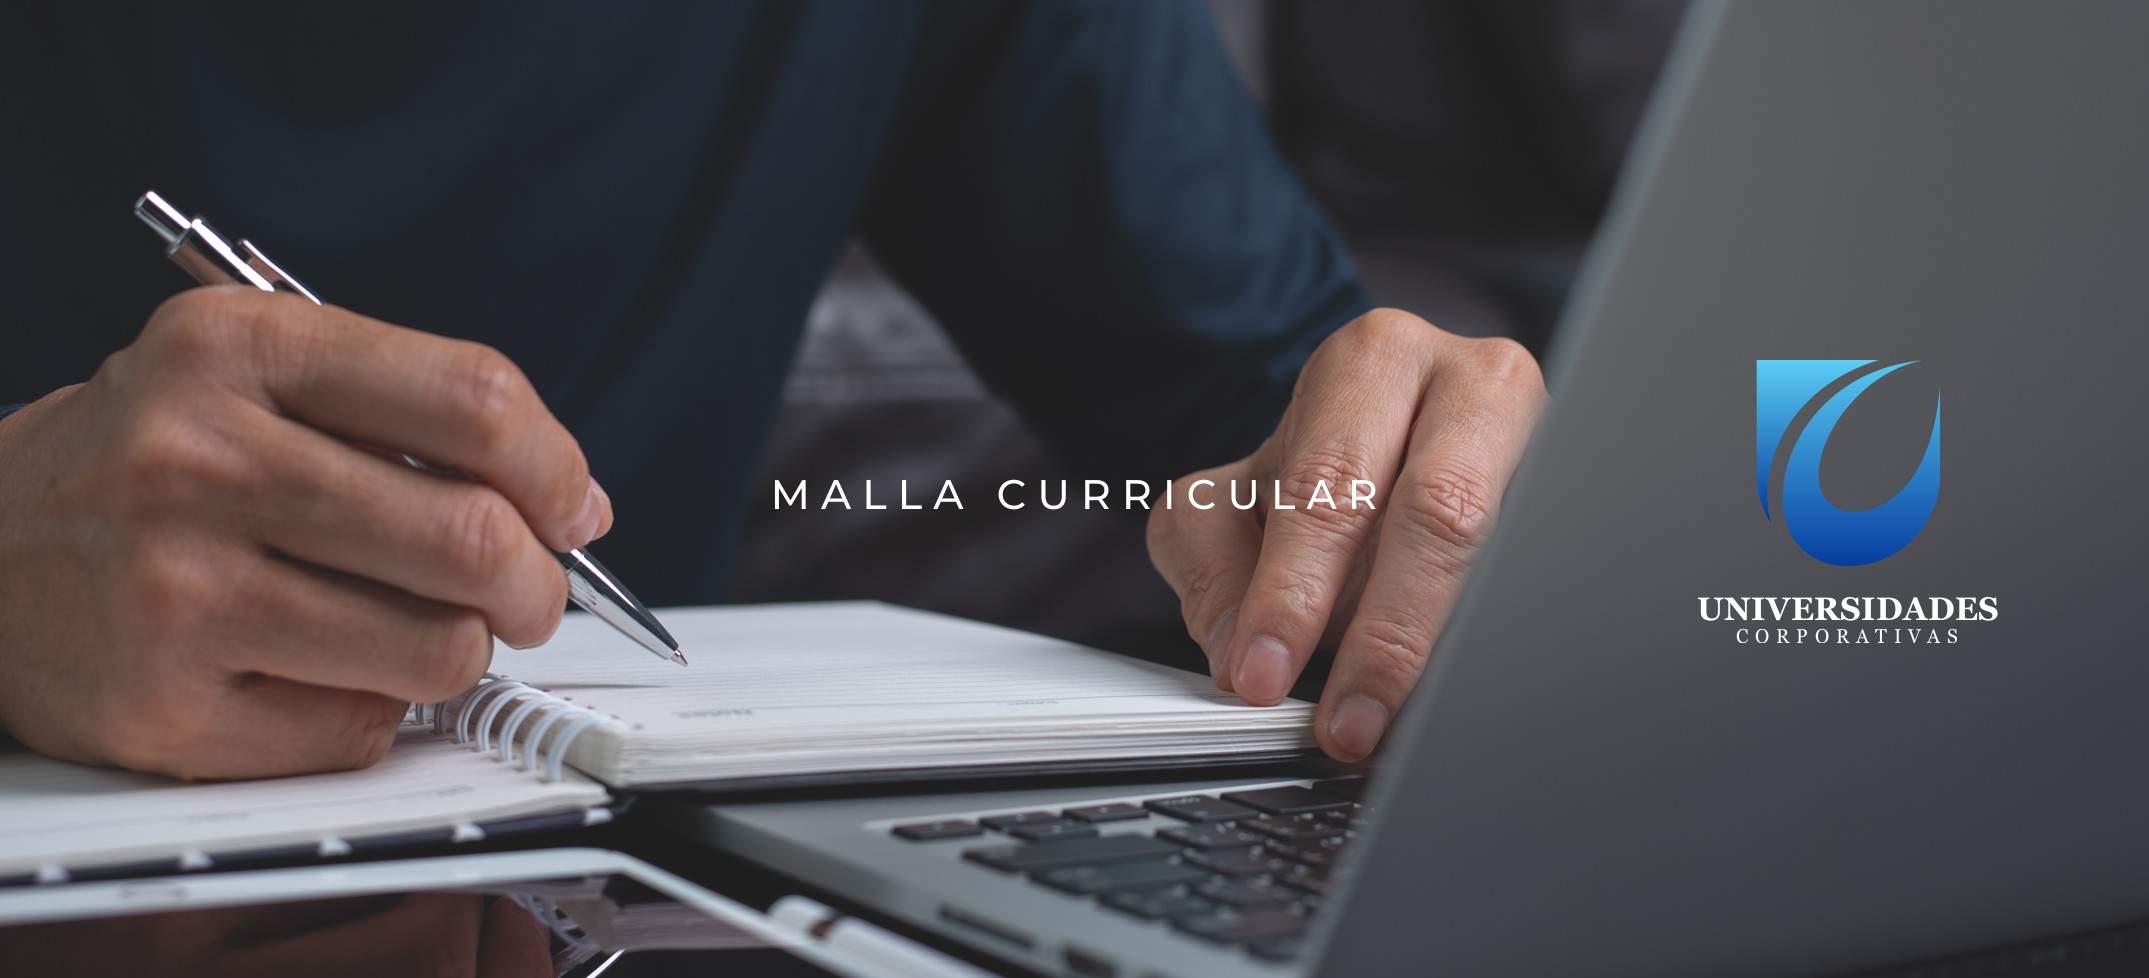 Malla Curricular, Escuelas Corporativas | Universidades Corporativas